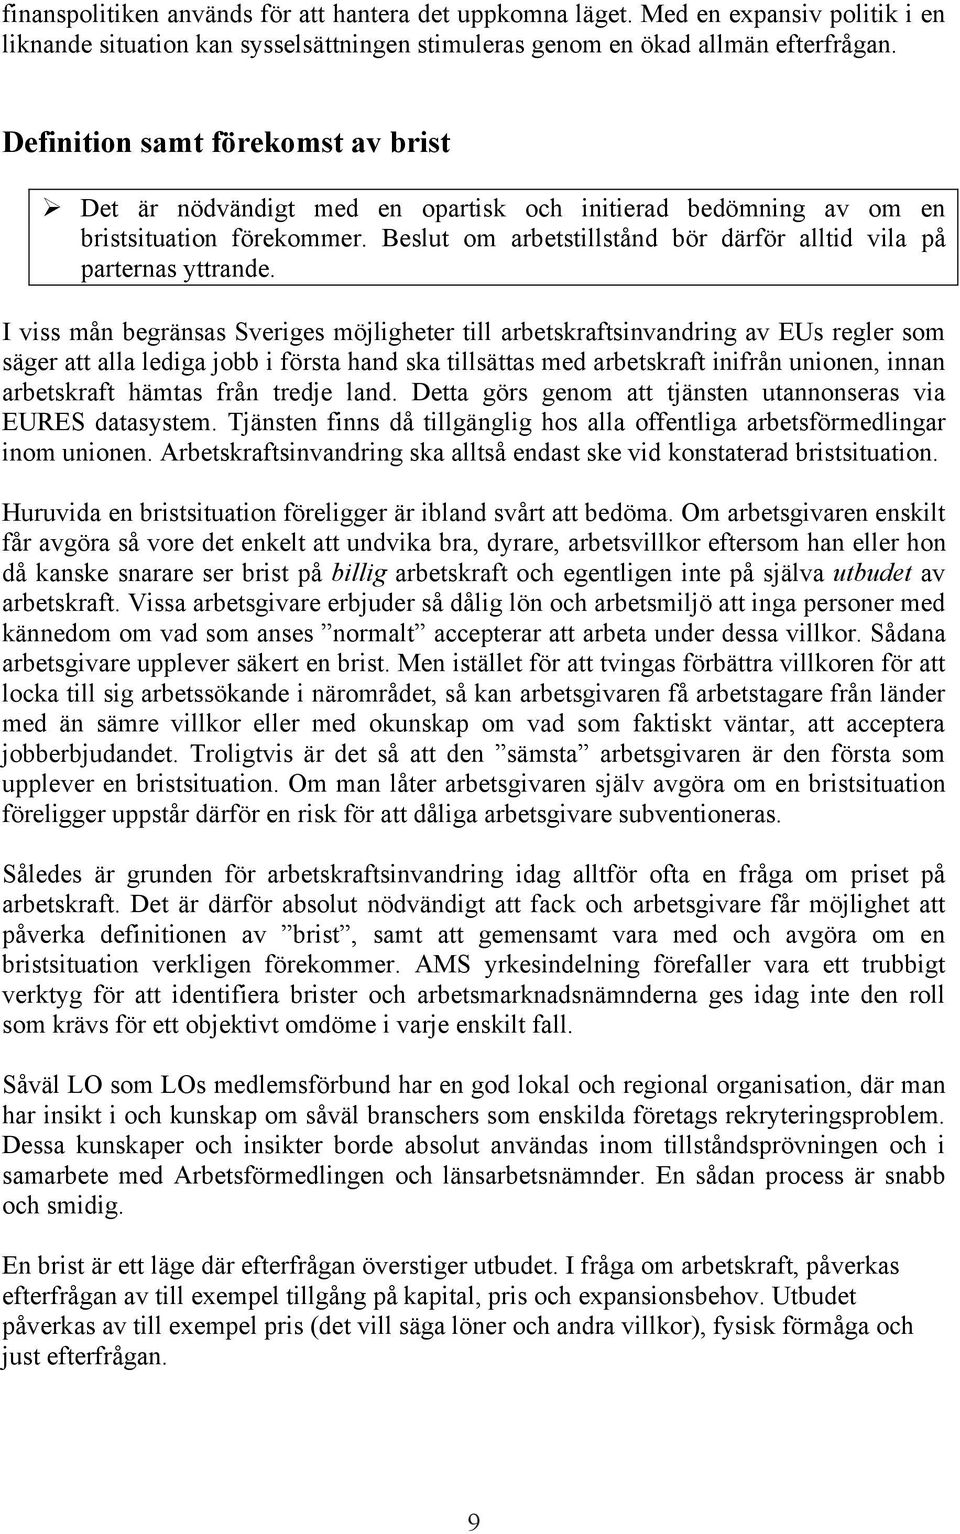 I viss mån begränsas Sveriges möjligheter till arbetskraftsinvandring av EUs regler som säger att alla lediga jobb i första hand ska tillsättas med arbetskraft inifrån unionen, innan arbetskraft